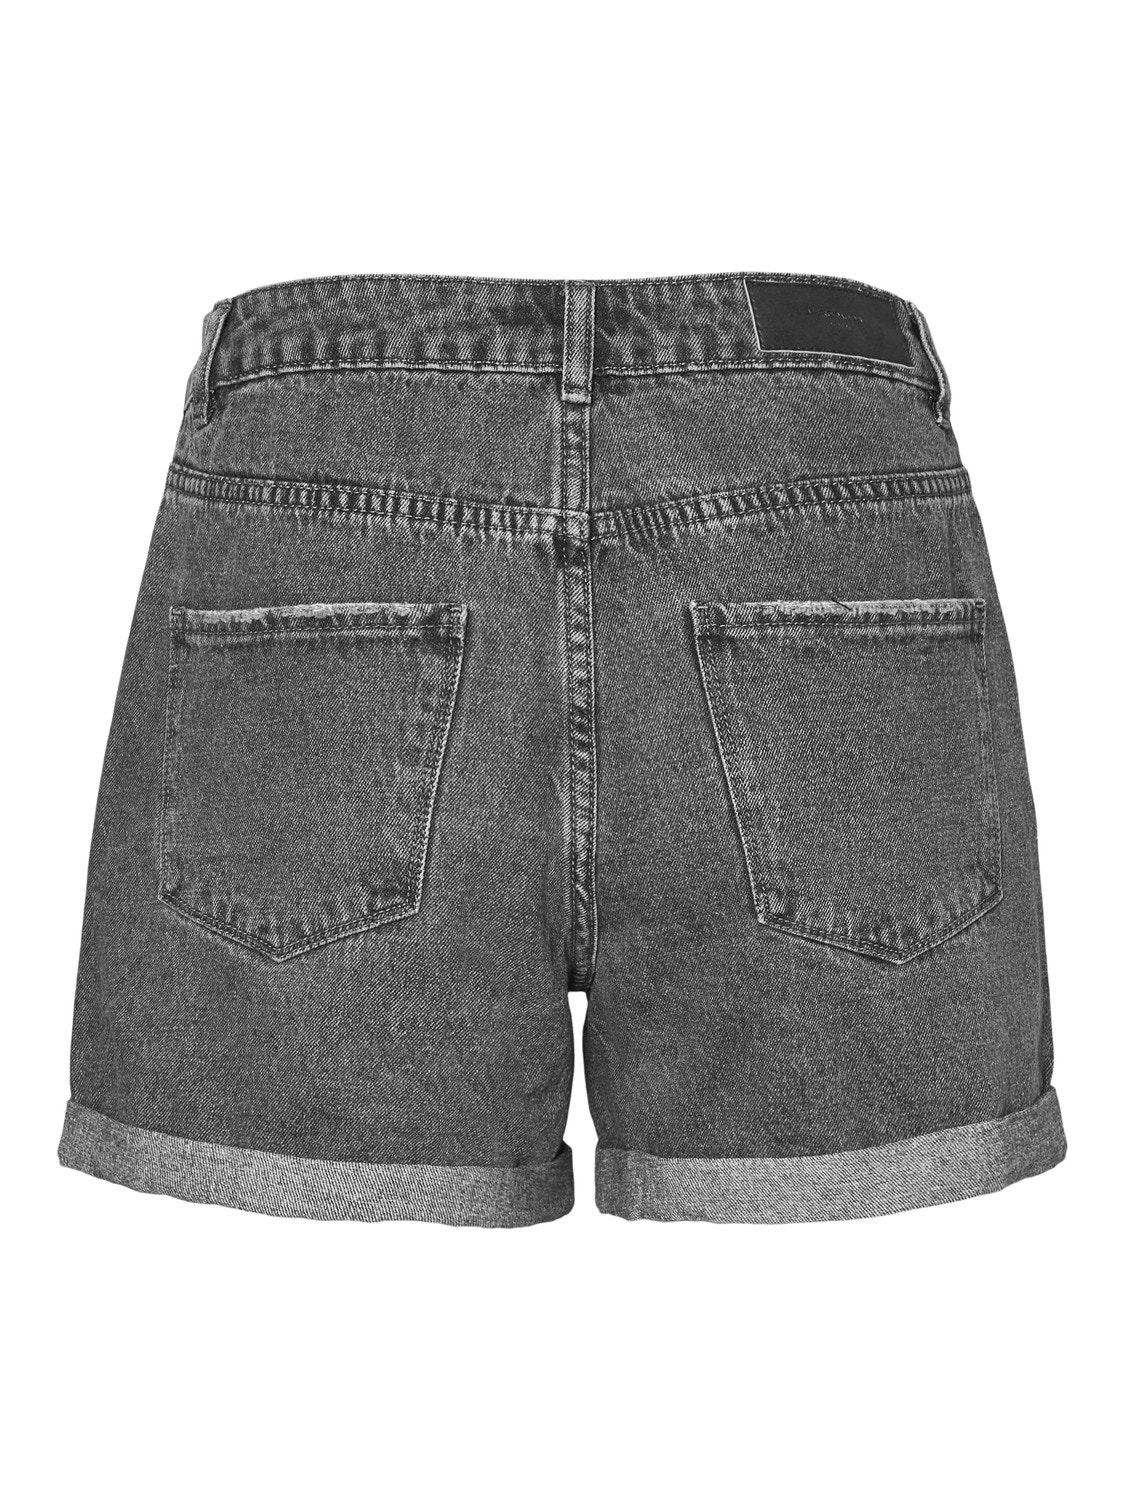 Vero Moda VMNINETEEN Shorts -Medium Grey Denim - 10210384